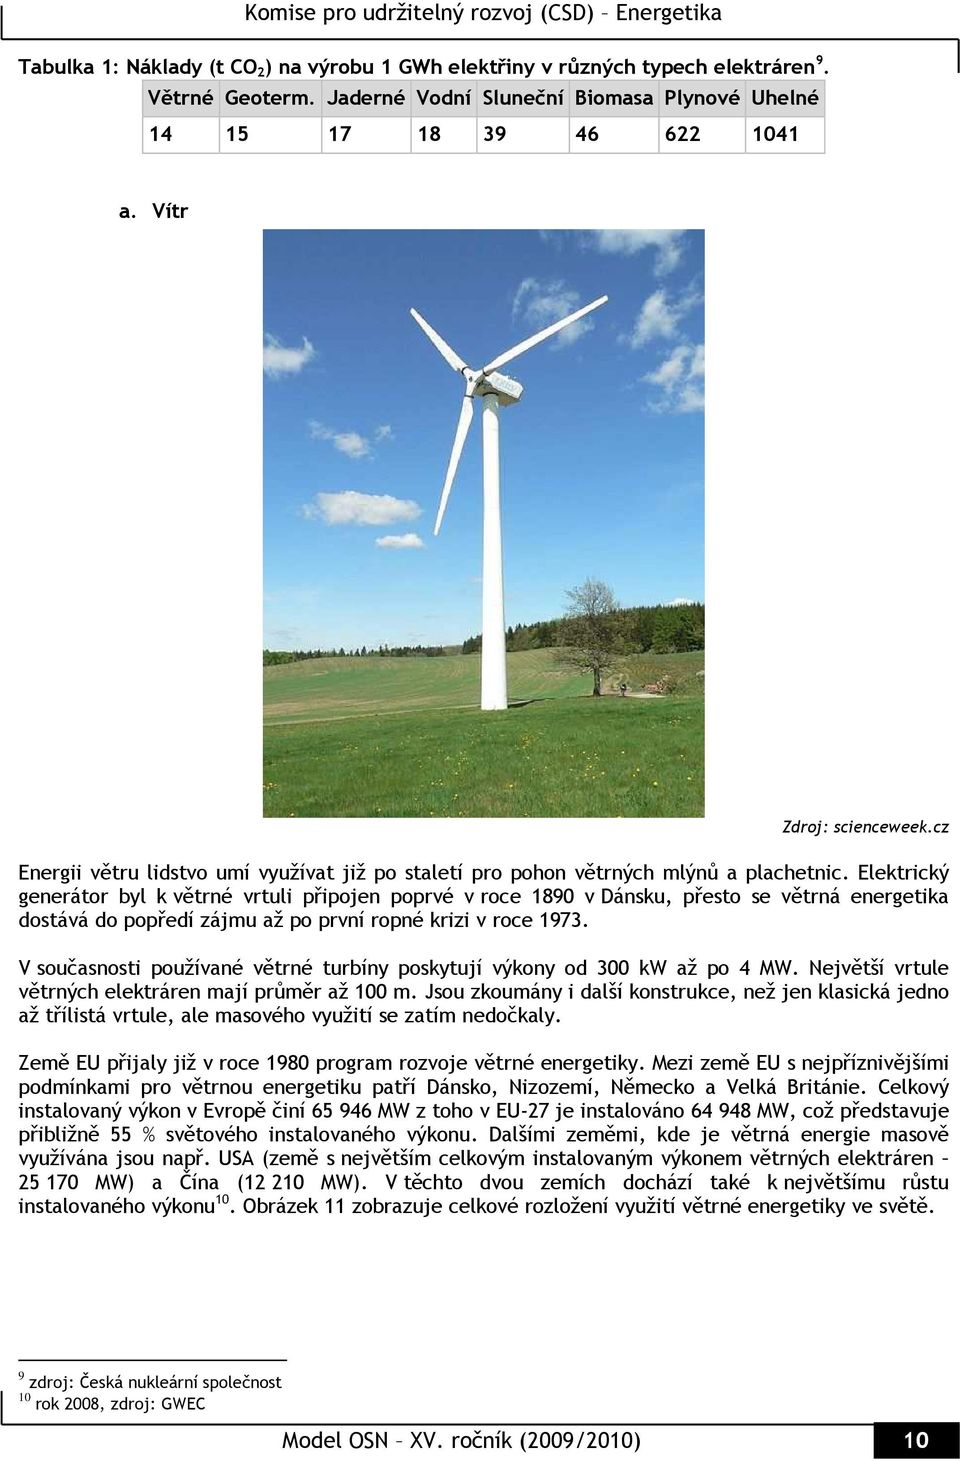 Elektrický generátor byl k větrné vrtuli připojen poprvé v roce 1890 v Dánsku, přesto se větrná energetika dostává do popředí zájmu až po první ropné krizi v roce 1973.